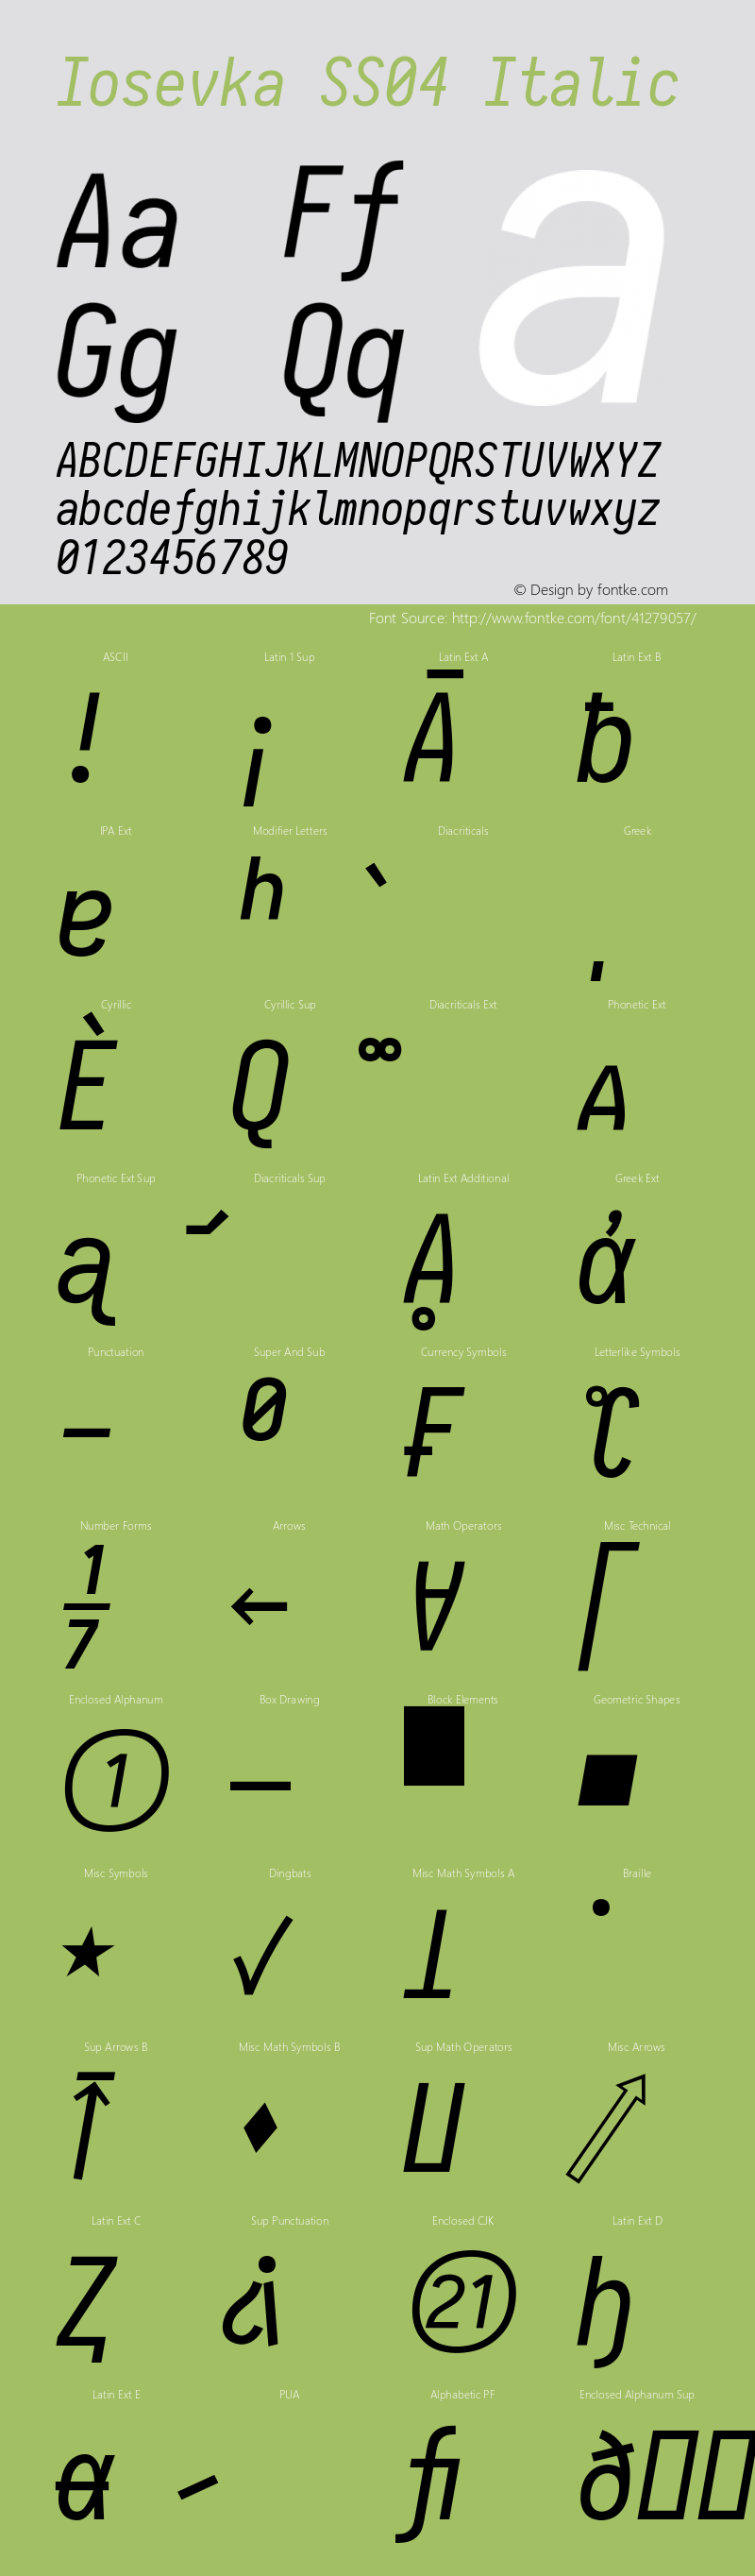 Iosevka SS04 Italic 2.3.1 Font Sample